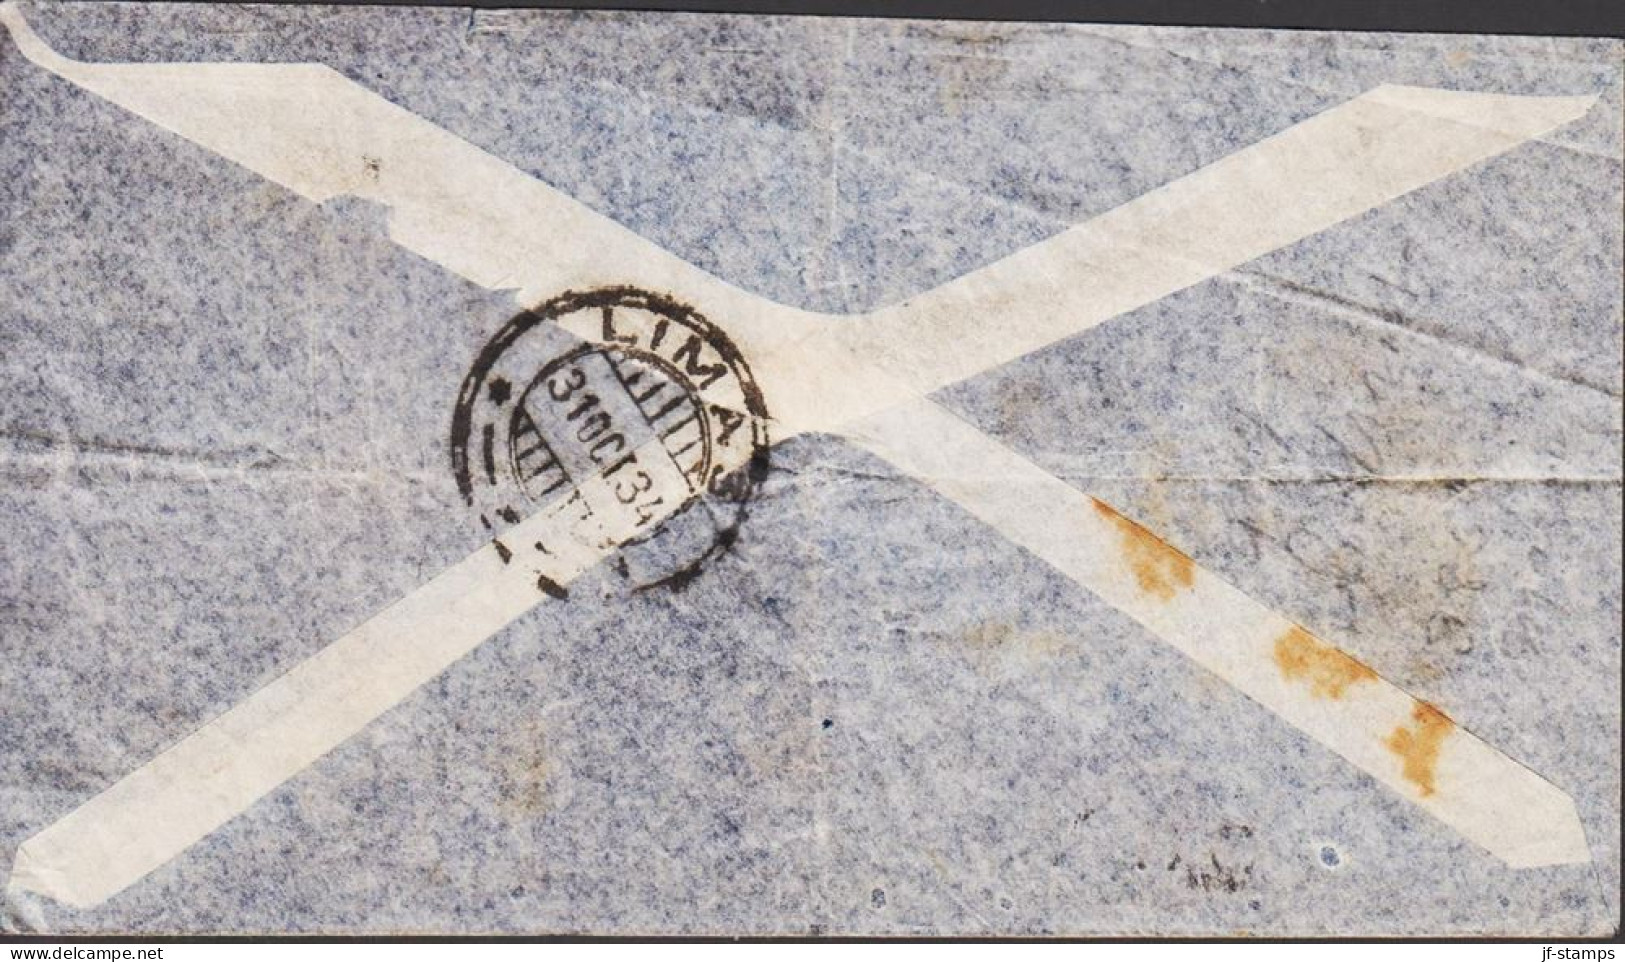 1934. PERU. Small POR AVION PANAGRA Envelope To Tacoma, Wash, USA With 2 Ex 50 CENTAVOS Simon-Bolivar-monu... - JF545369 - Peru